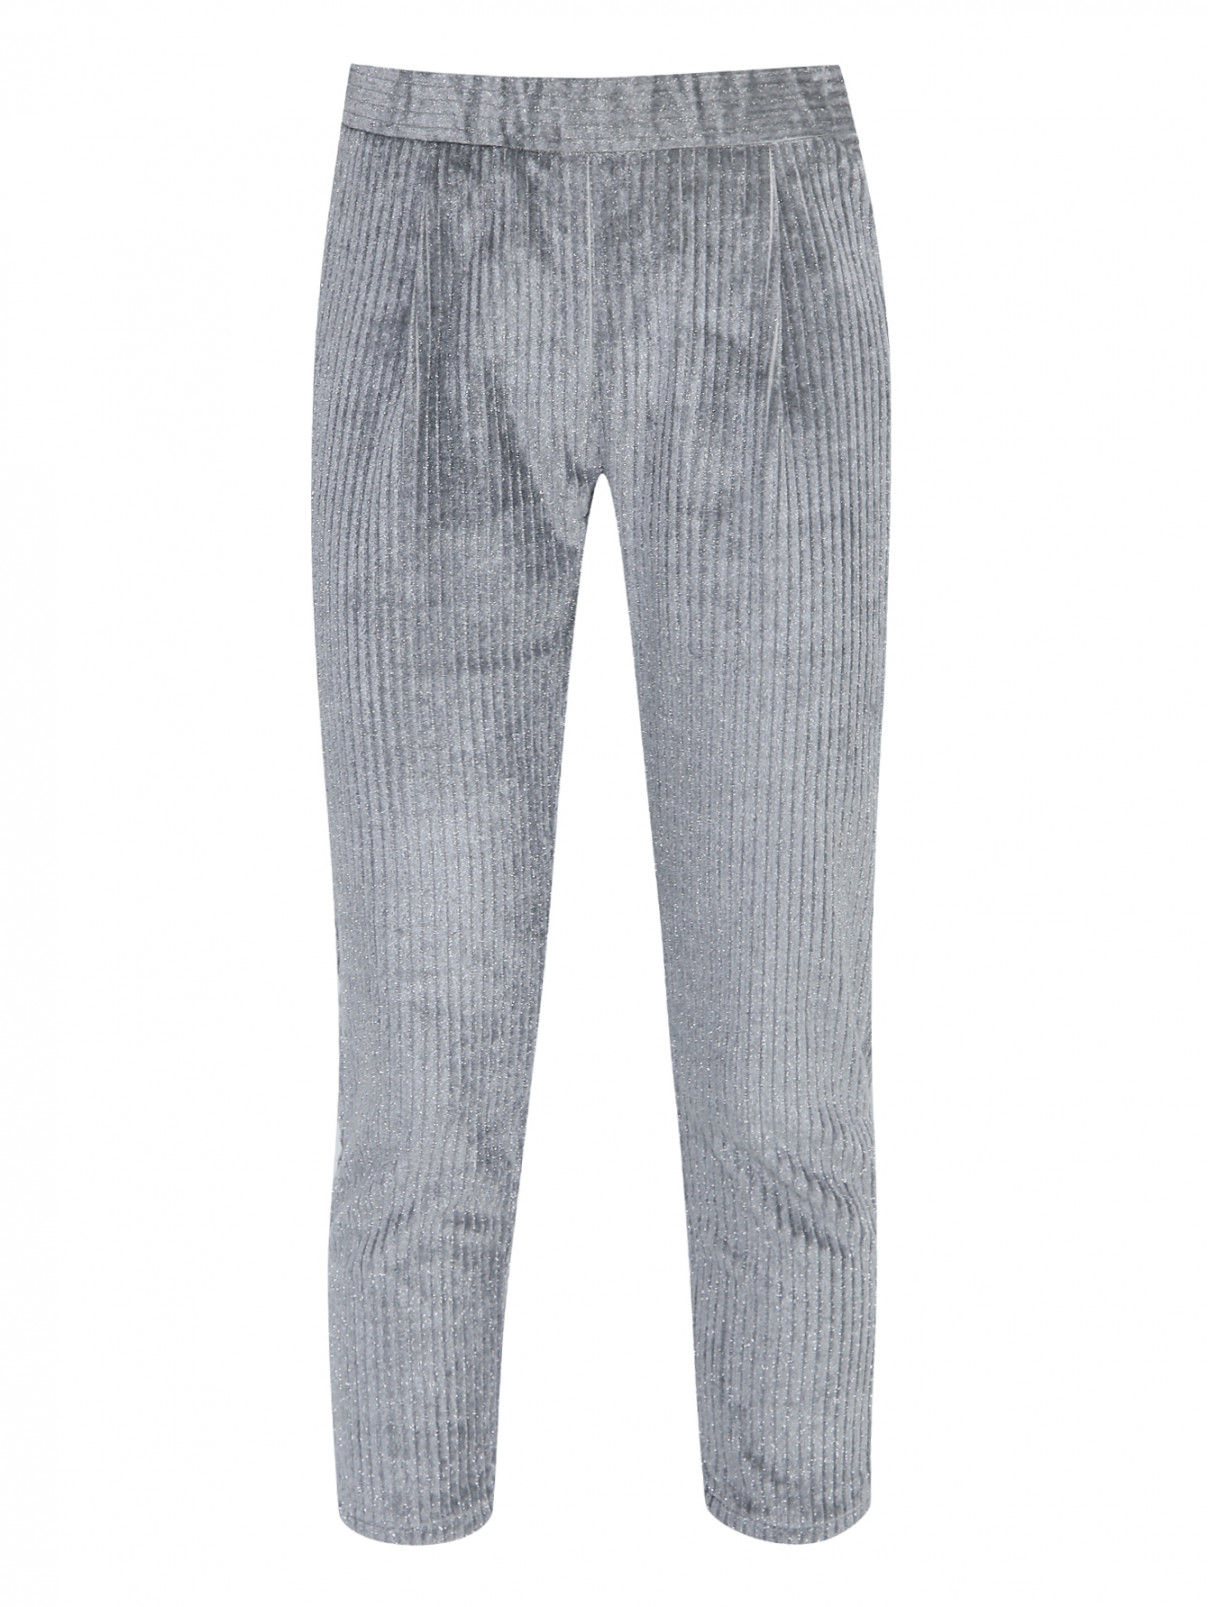 Вельветовые брюки с люрексом на резинке Il Gufo  –  Общий вид  – Цвет:  Серый